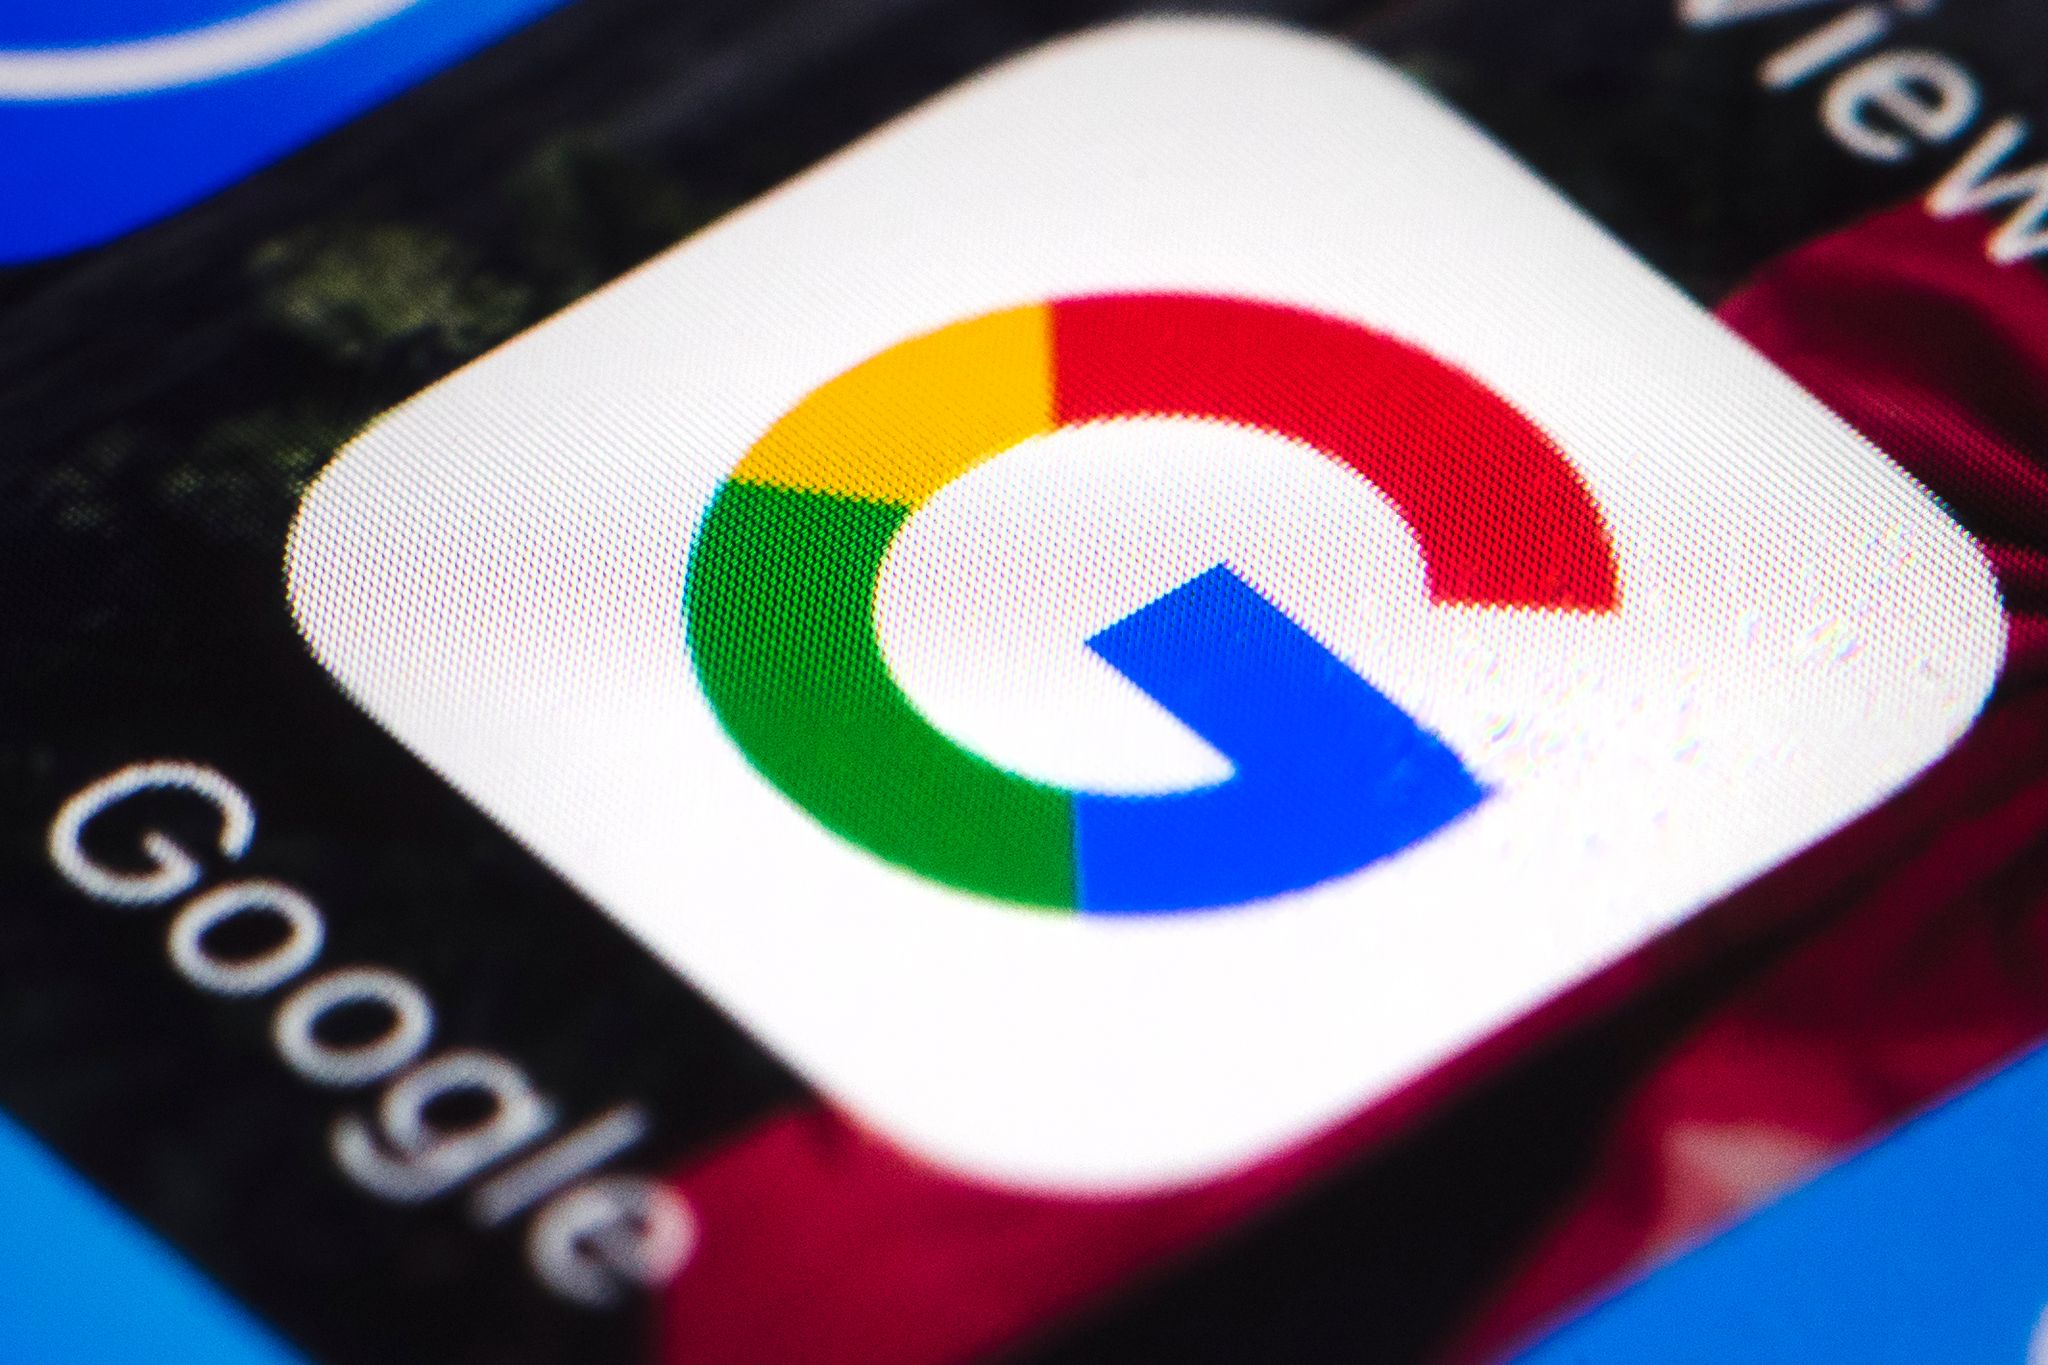 Das Google-Logo auf einem Smartphone. Google will in den USA nach einem App-Store-Vergleich Millionen zahlen.